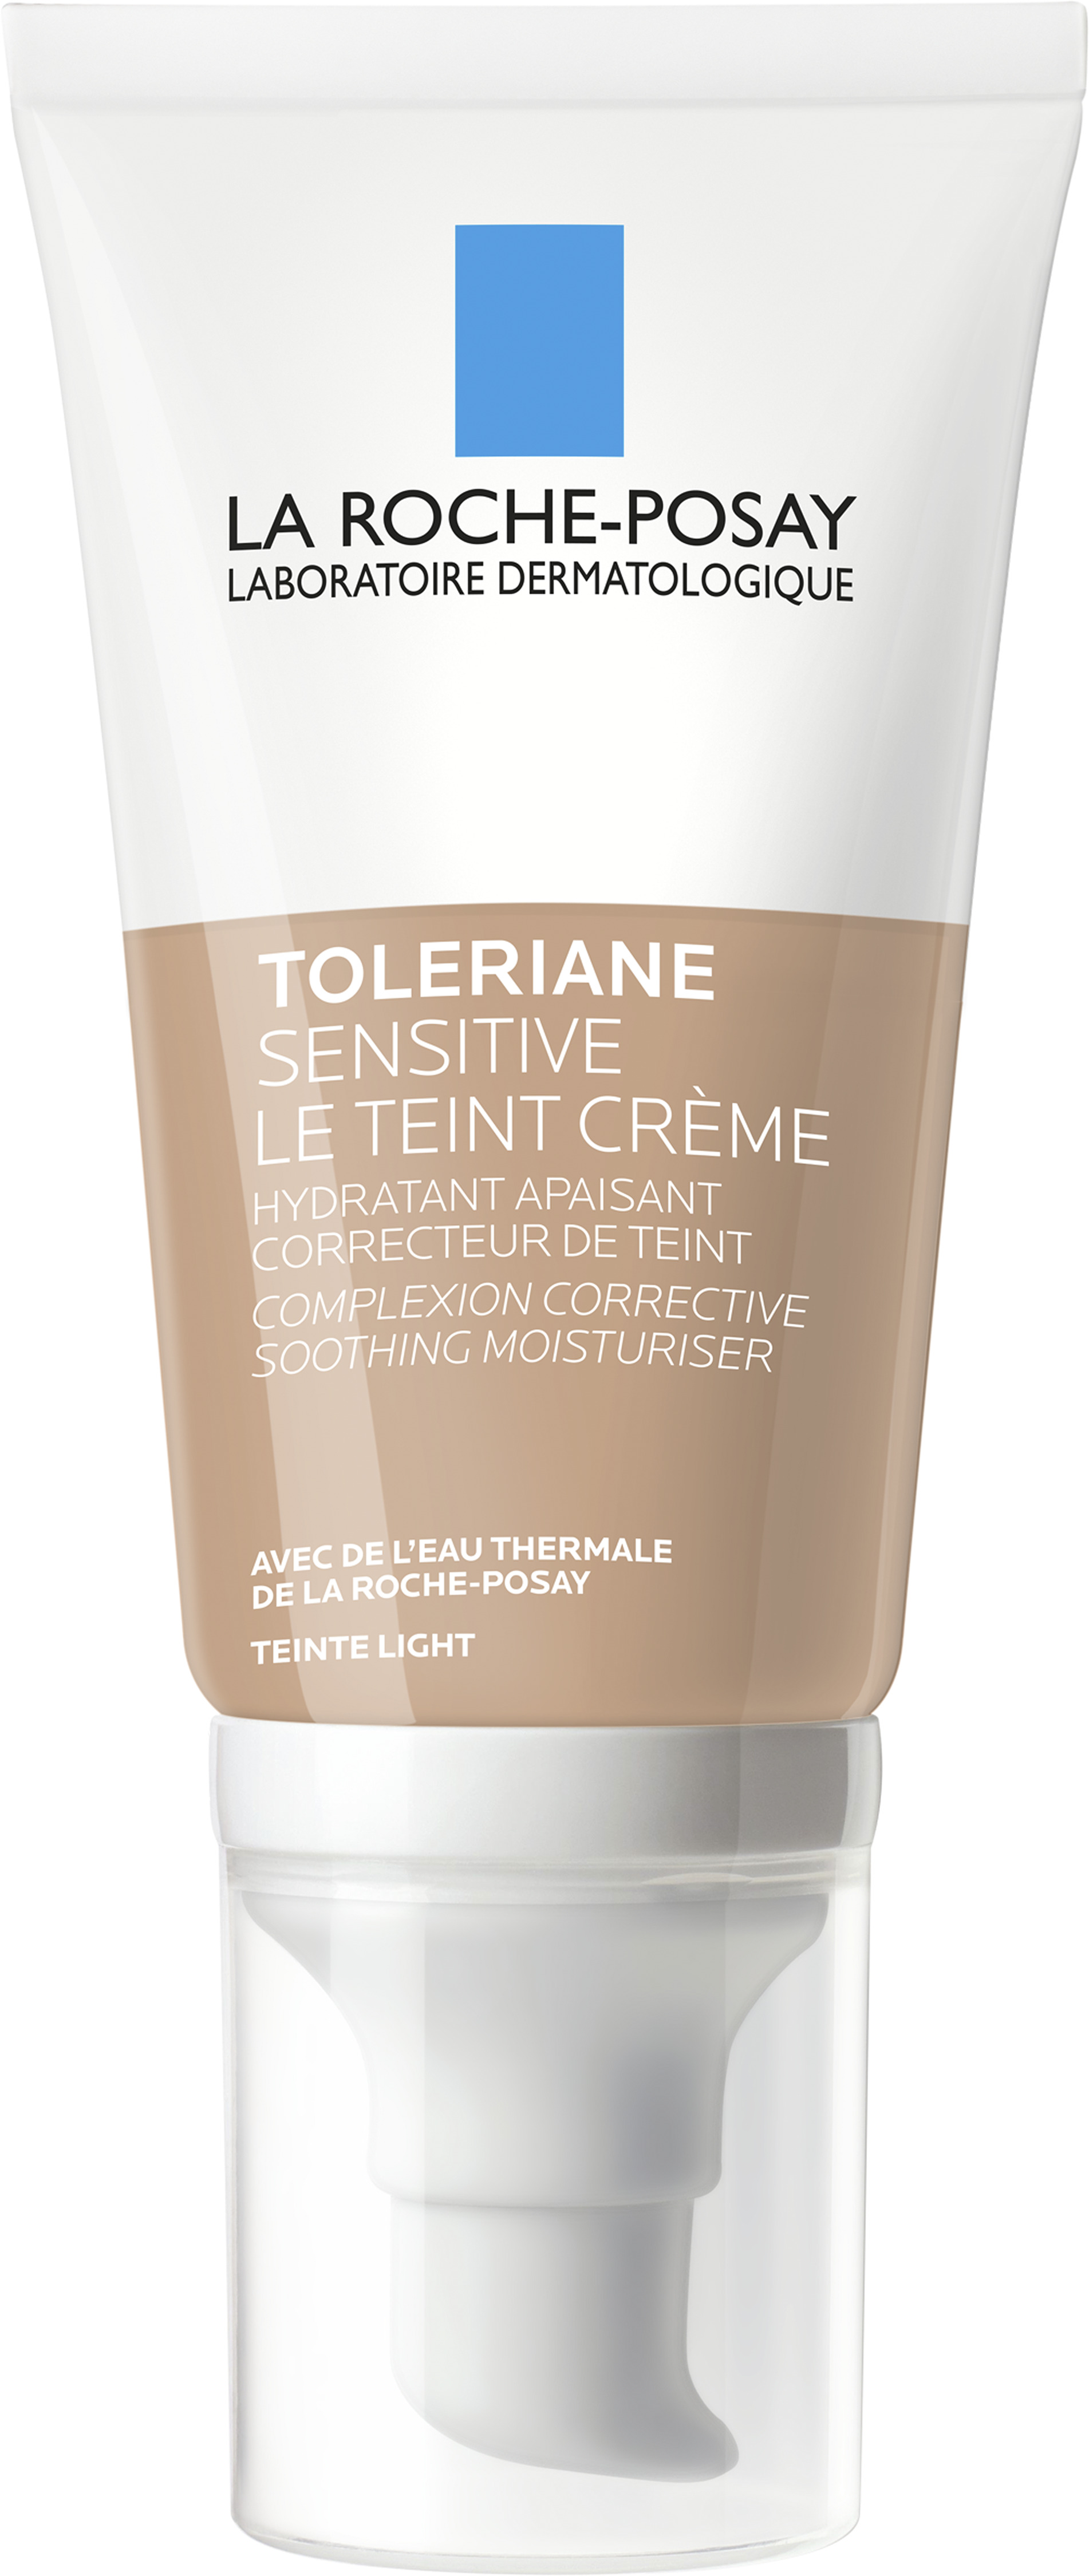 La Roche-Posay Toleriane Sensitive Le teint Creme 50 ml